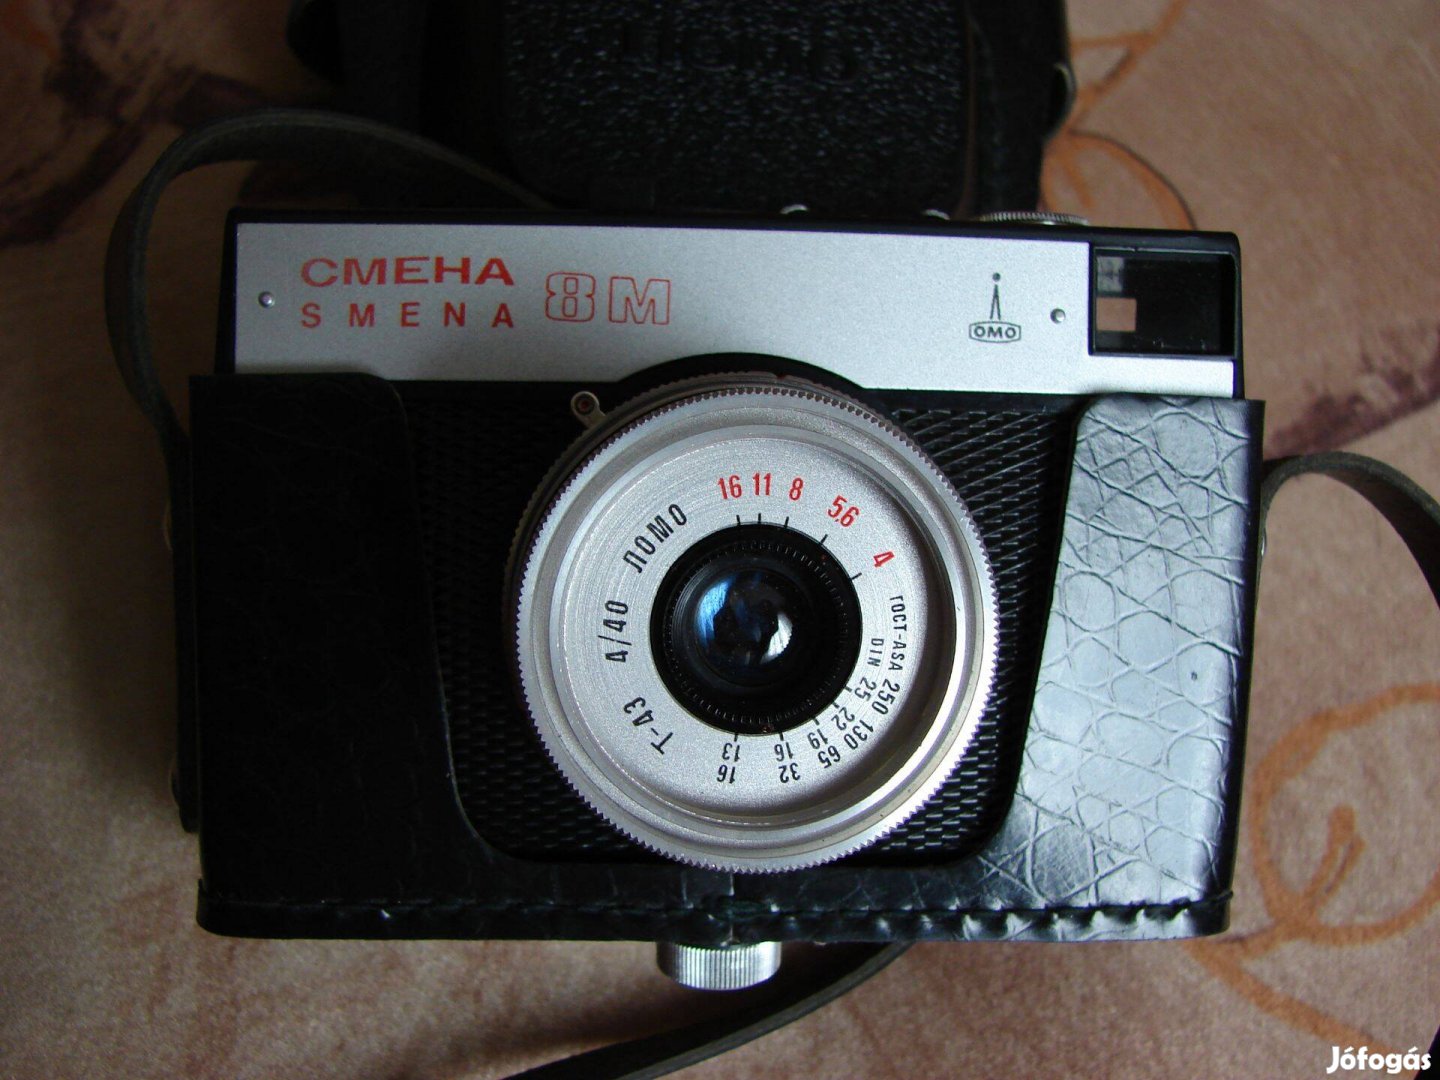 Cmena 8 M Fényképezőgép